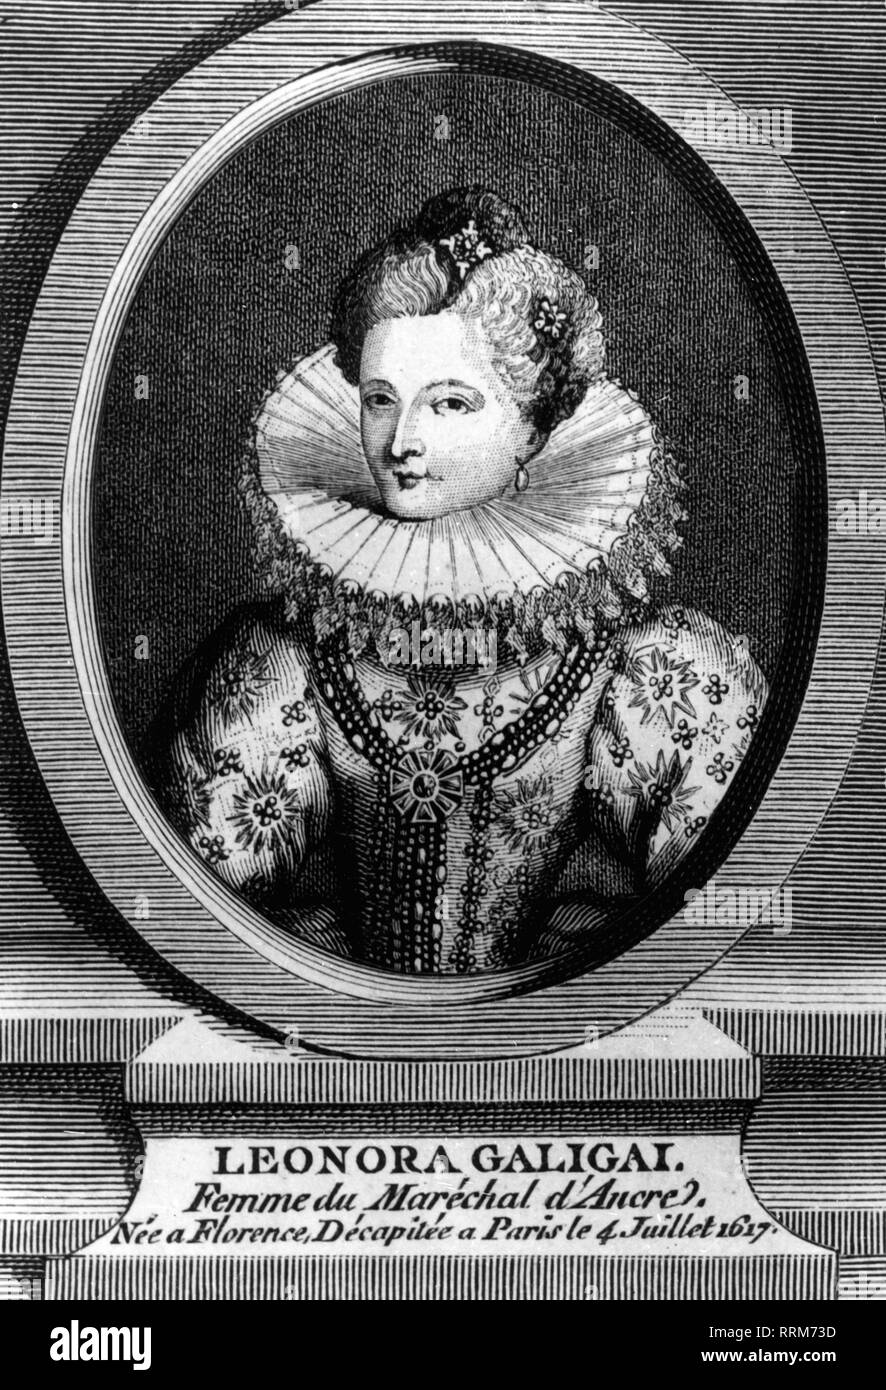 Galigai, Leonora, 19.3.1568 - 8.7.1617, Lady toscana-in-attesa, ritratto, incisione su rame, secolo XVII, artista del diritto d'autore non deve essere cancellata Foto Stock